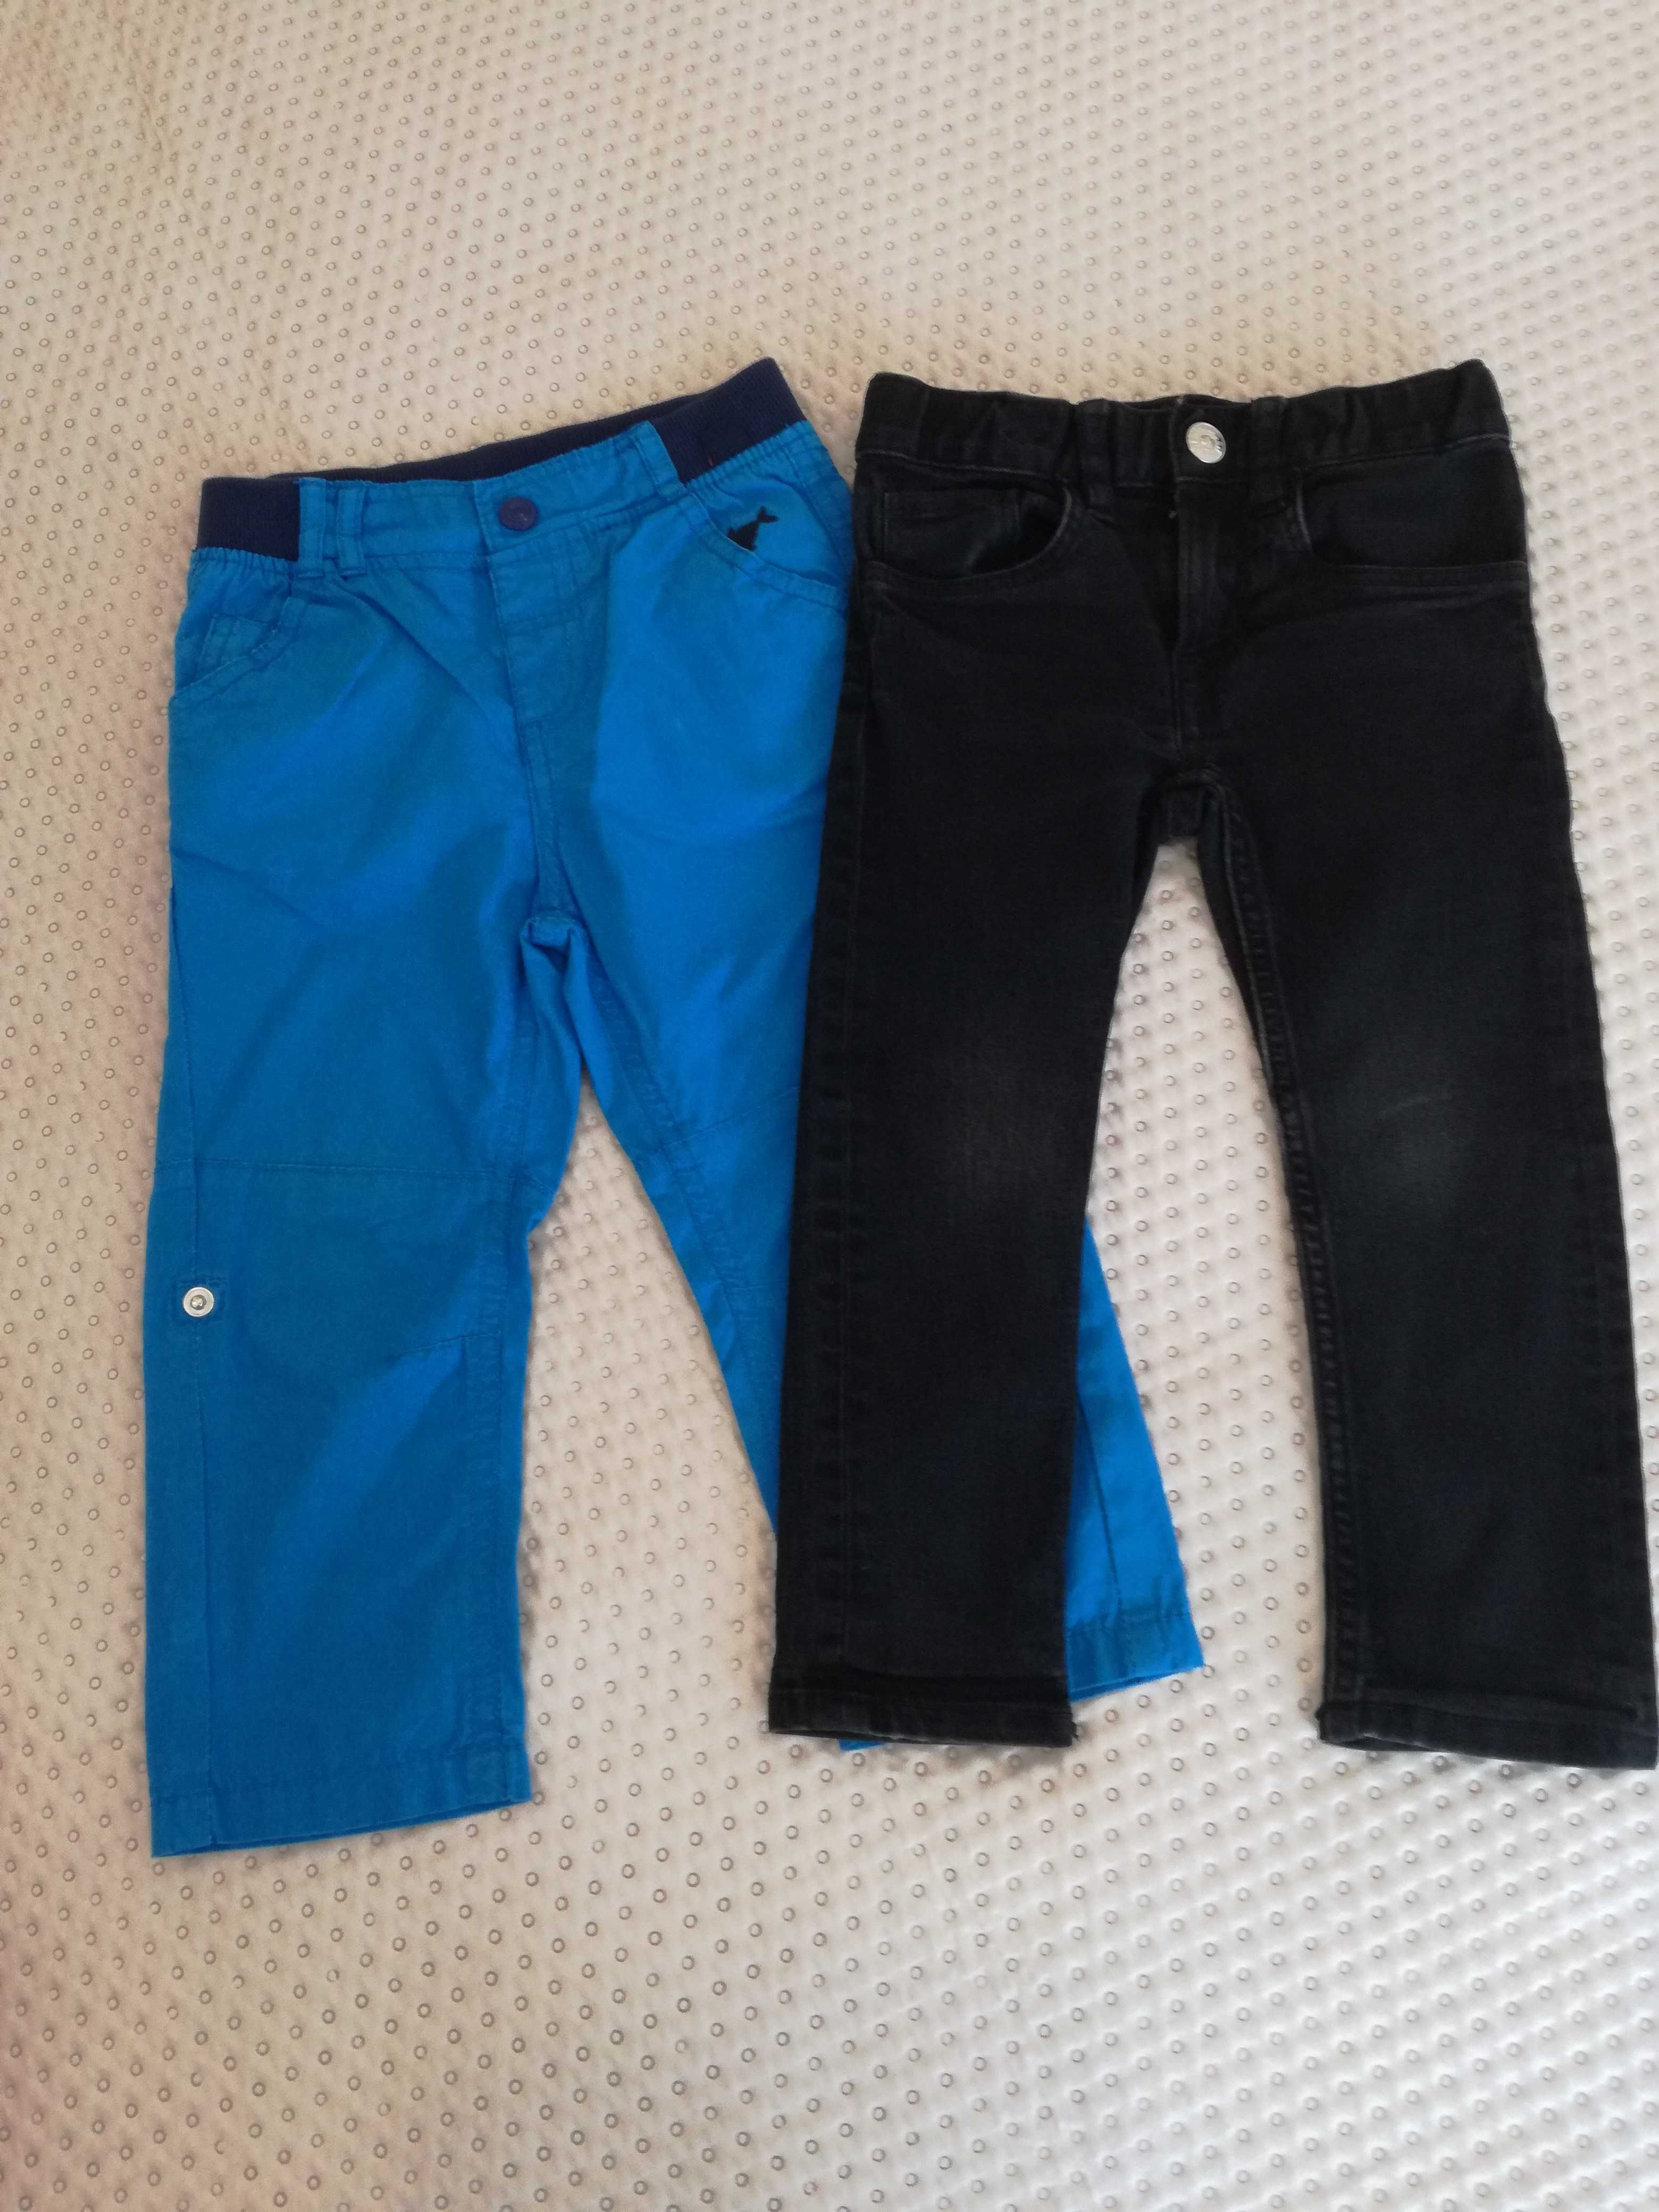 Spodnie czarne h&m jeansowe niebieskie smyk bawełna 2 pary 92